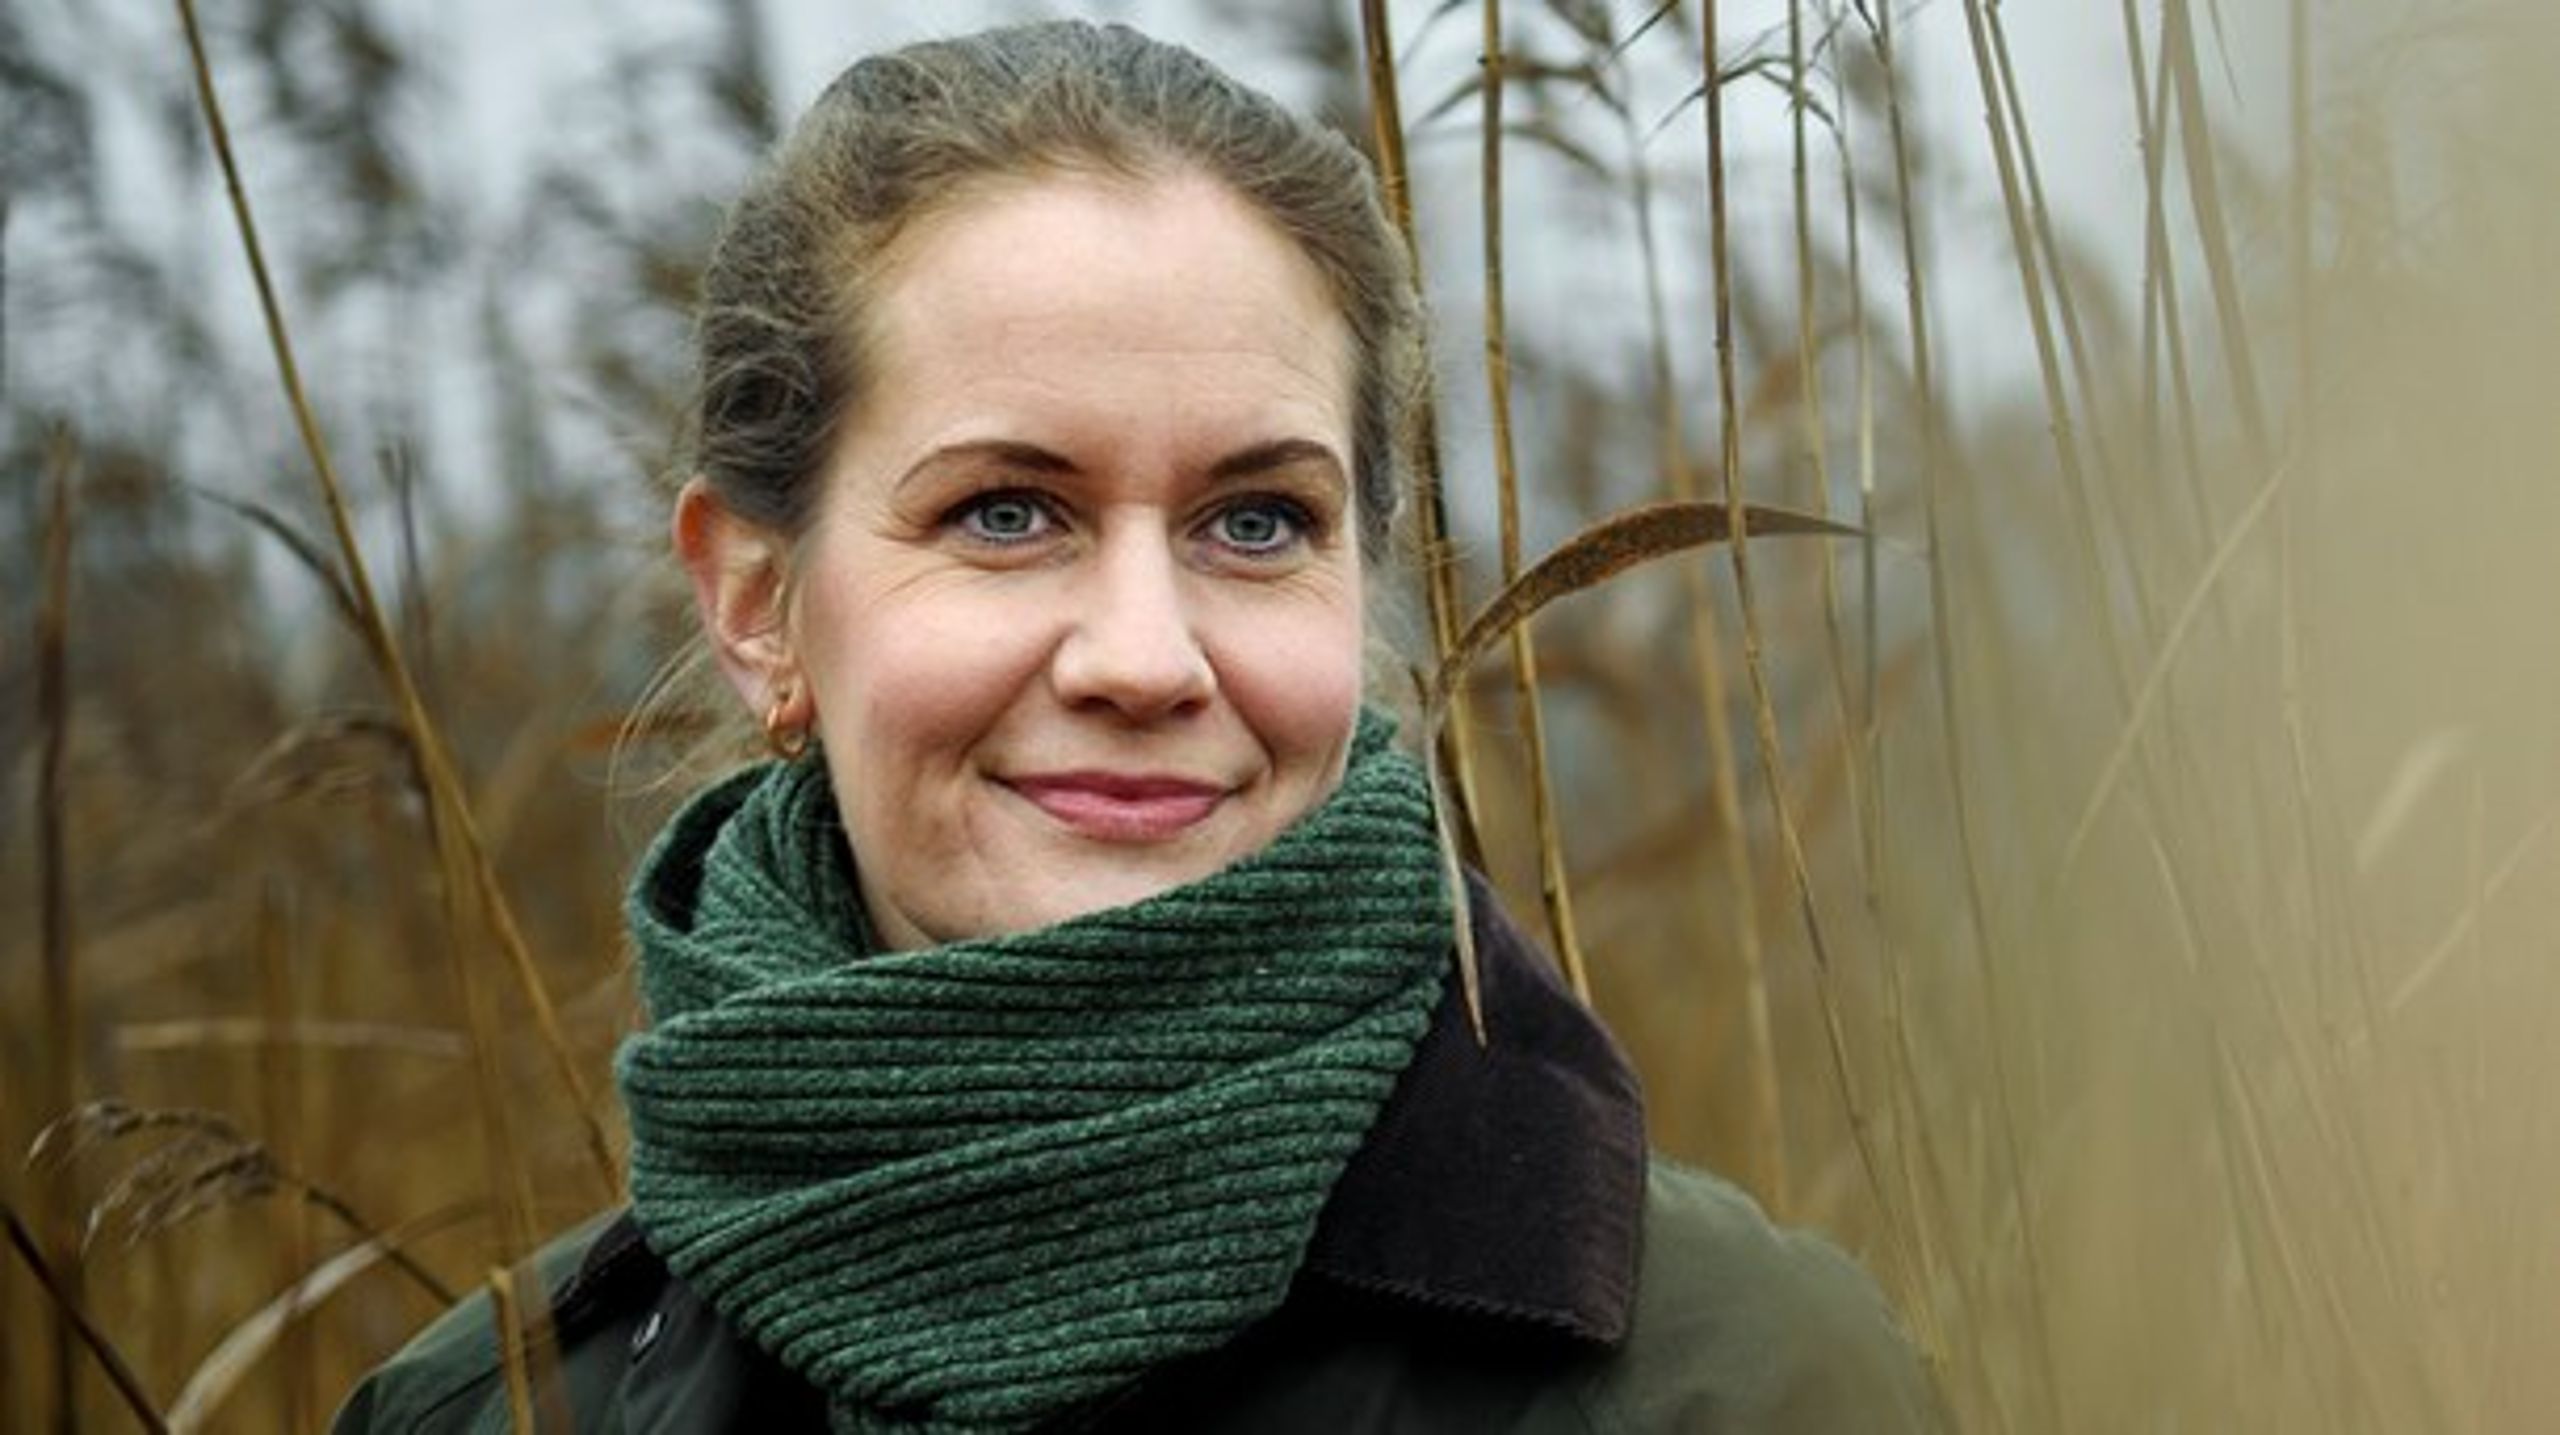 2019 gav os Danmarkshistoriens grønneste valg, og i 2020 skal valgkampens grønne løfter indfries, mener Maria Reumert Gjerding.